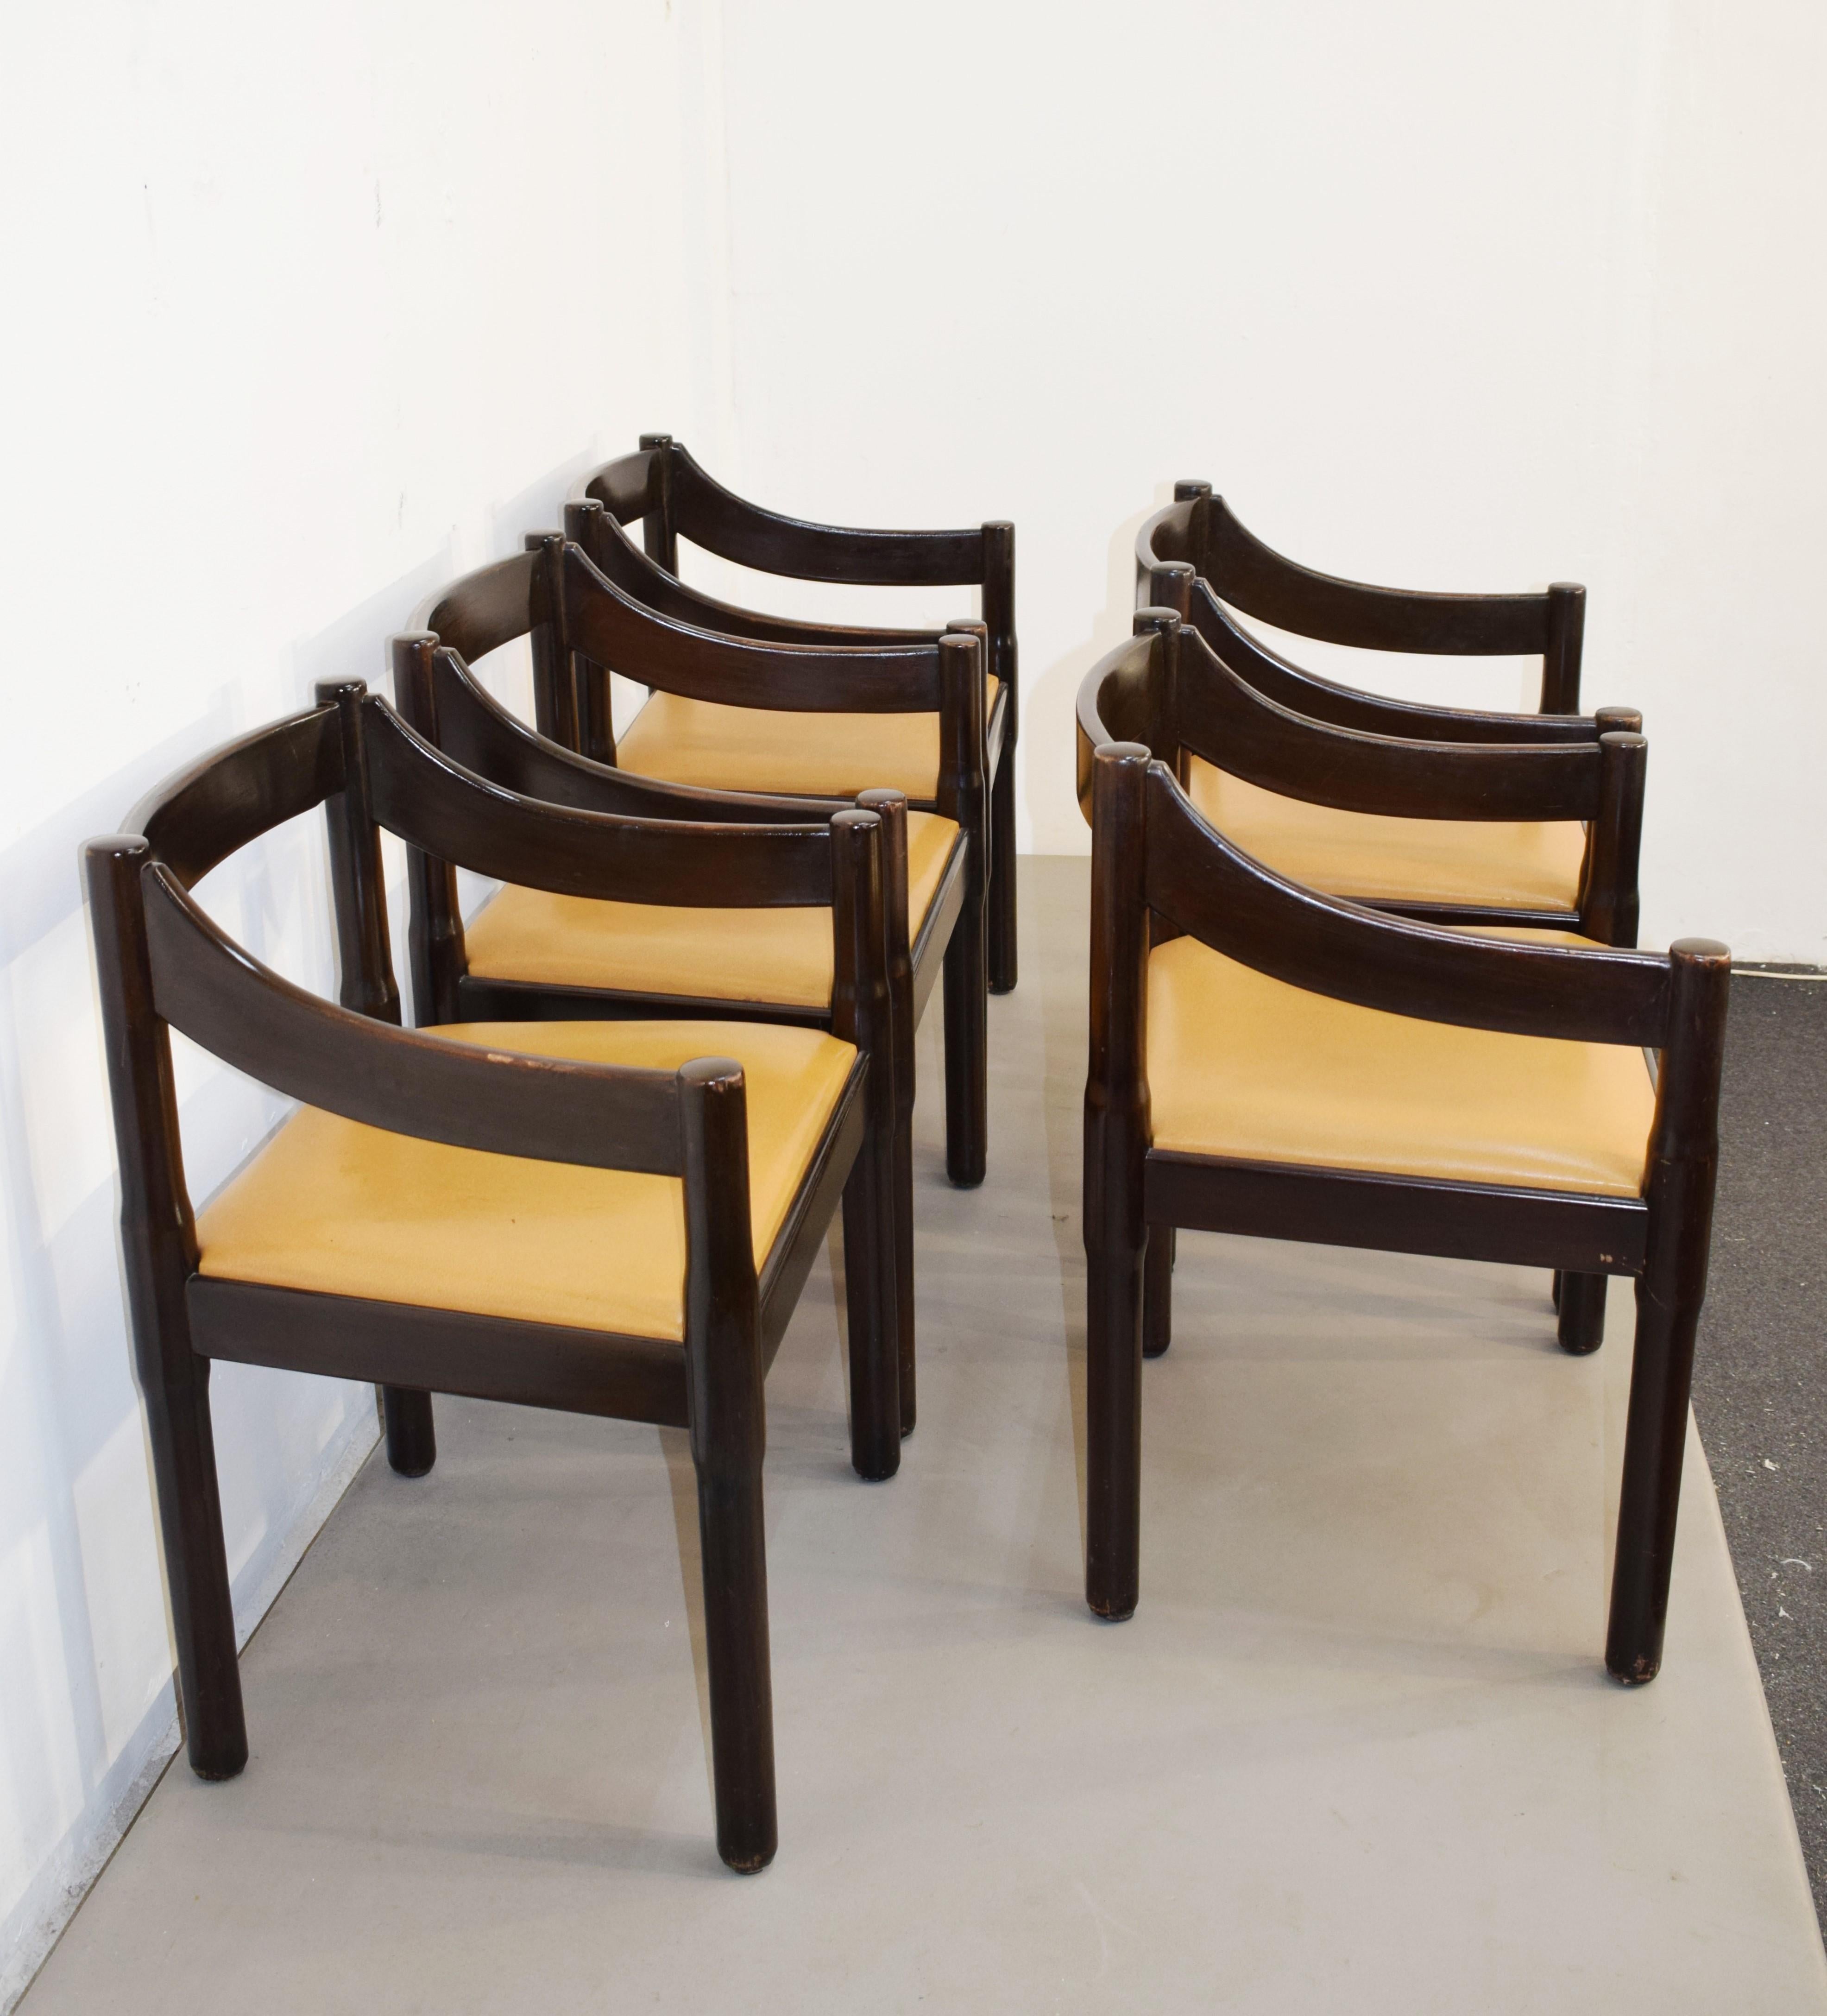 Satz von 5 Carimate-Stühlen von Vico Magistretti, Italien, 1960er Jahre (Moderne der Mitte des Jahrhunderts)